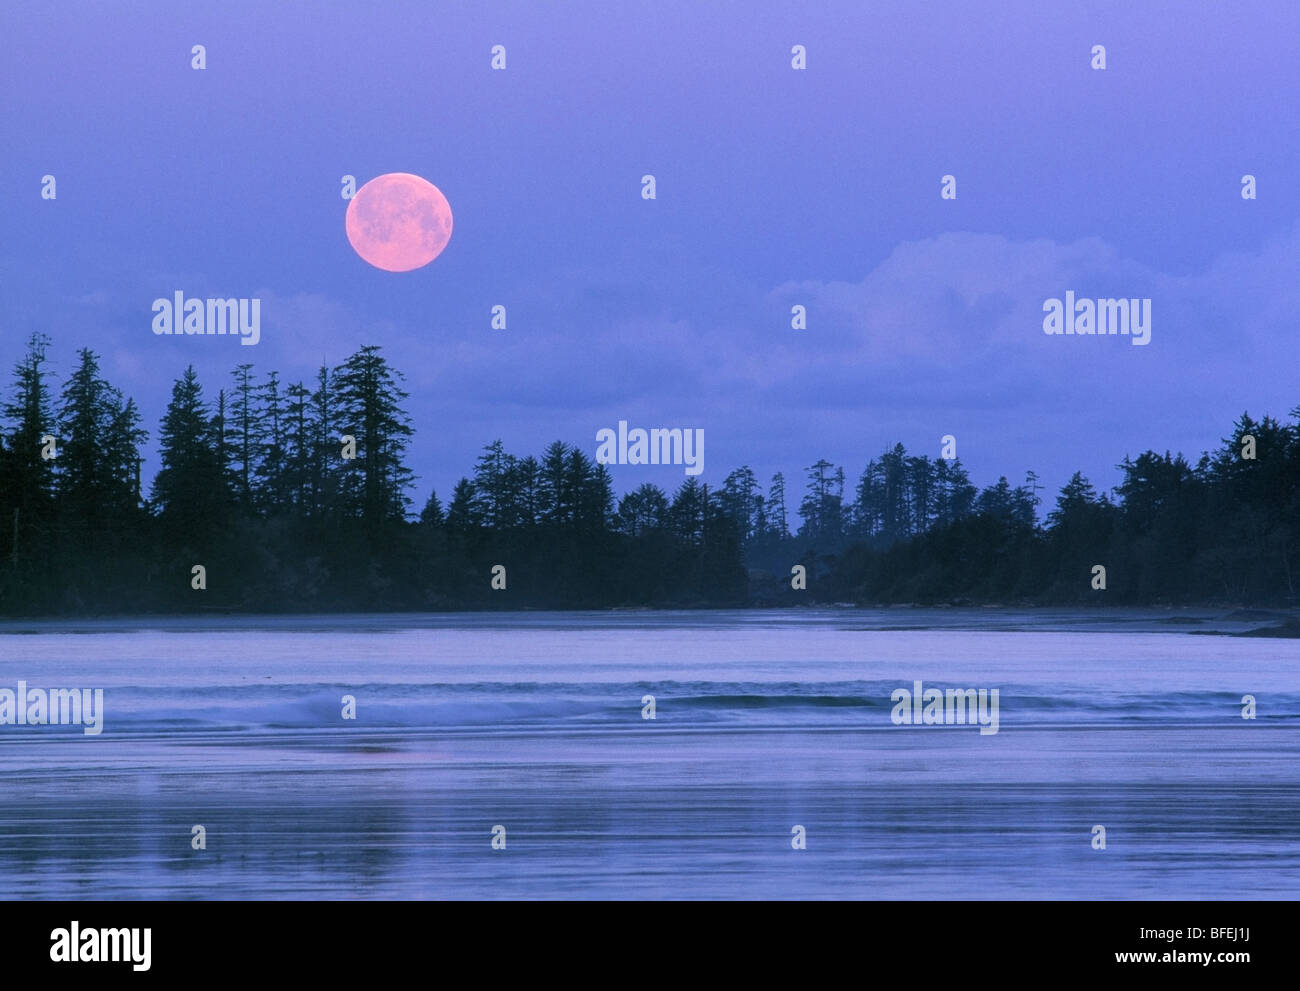 Impostazione di luna su Schooner Cove, Pacific Rim National Park, l'isola di Vancouver, British Columbia, Canada Foto Stock